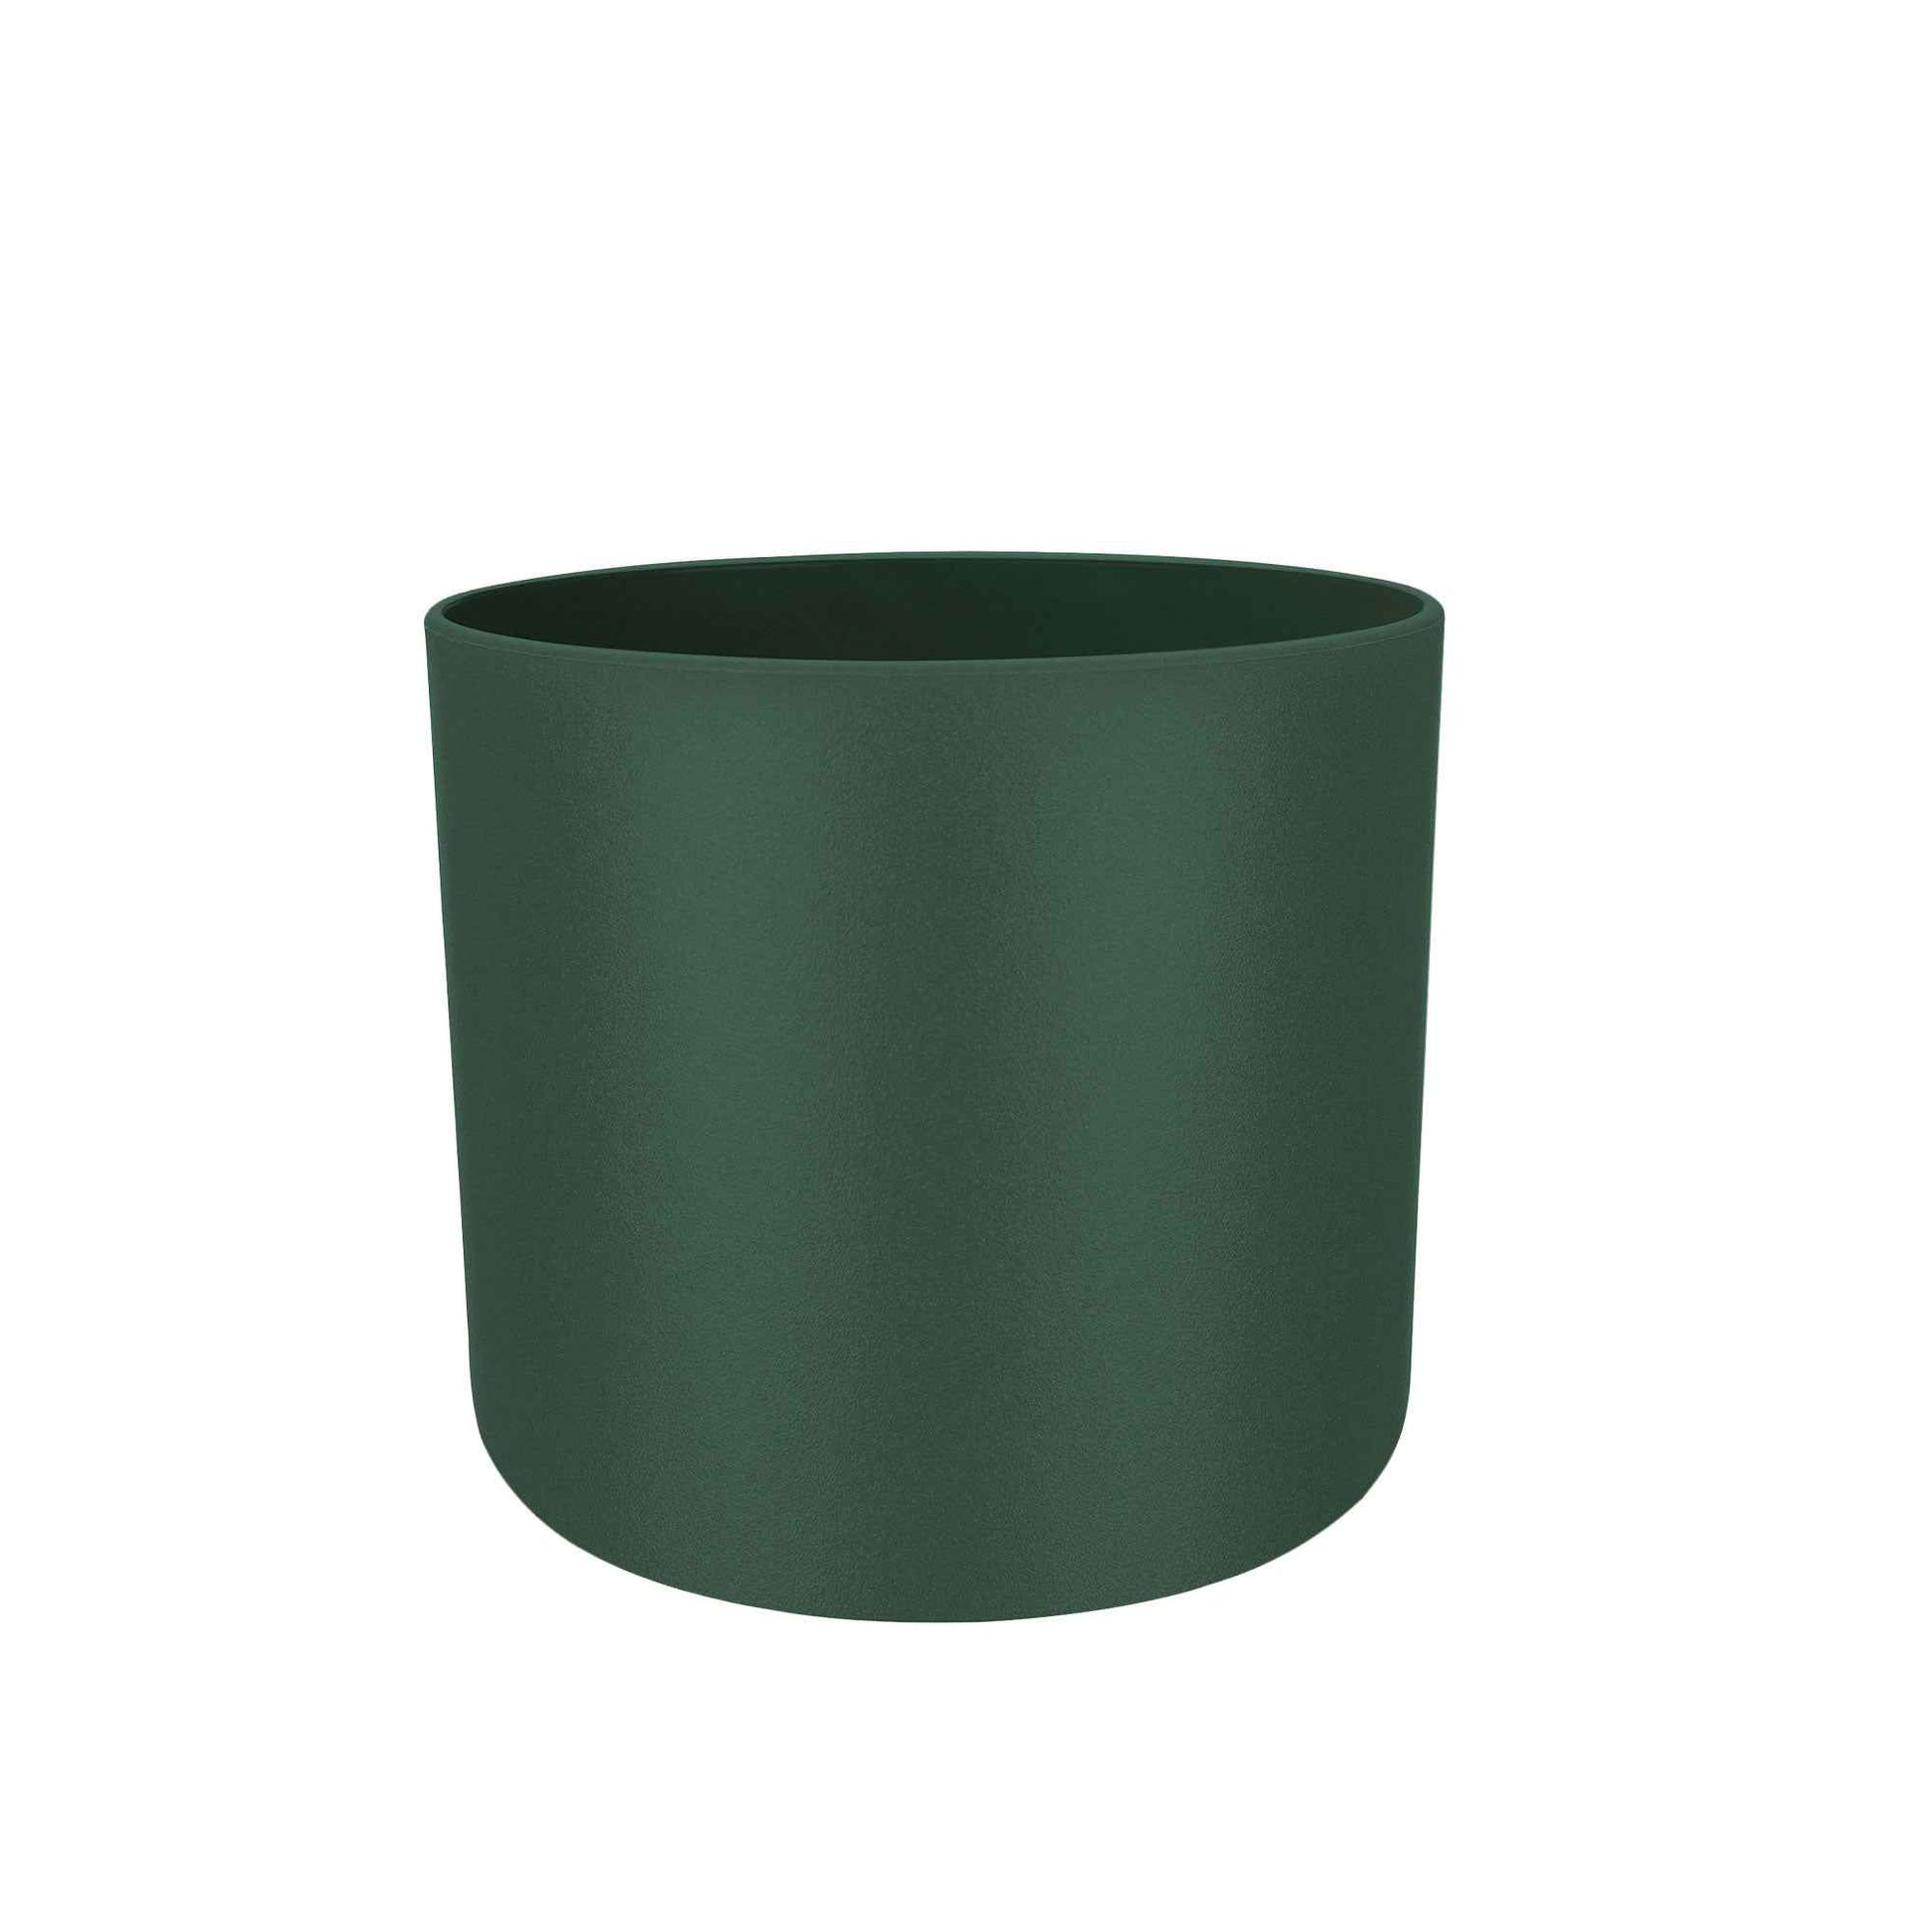 Elho pot de fleurs B.for soft rond - Pot pour l'intérieur vert avec suspension en corde de jute pour plantes - Petits pots d'intérieur